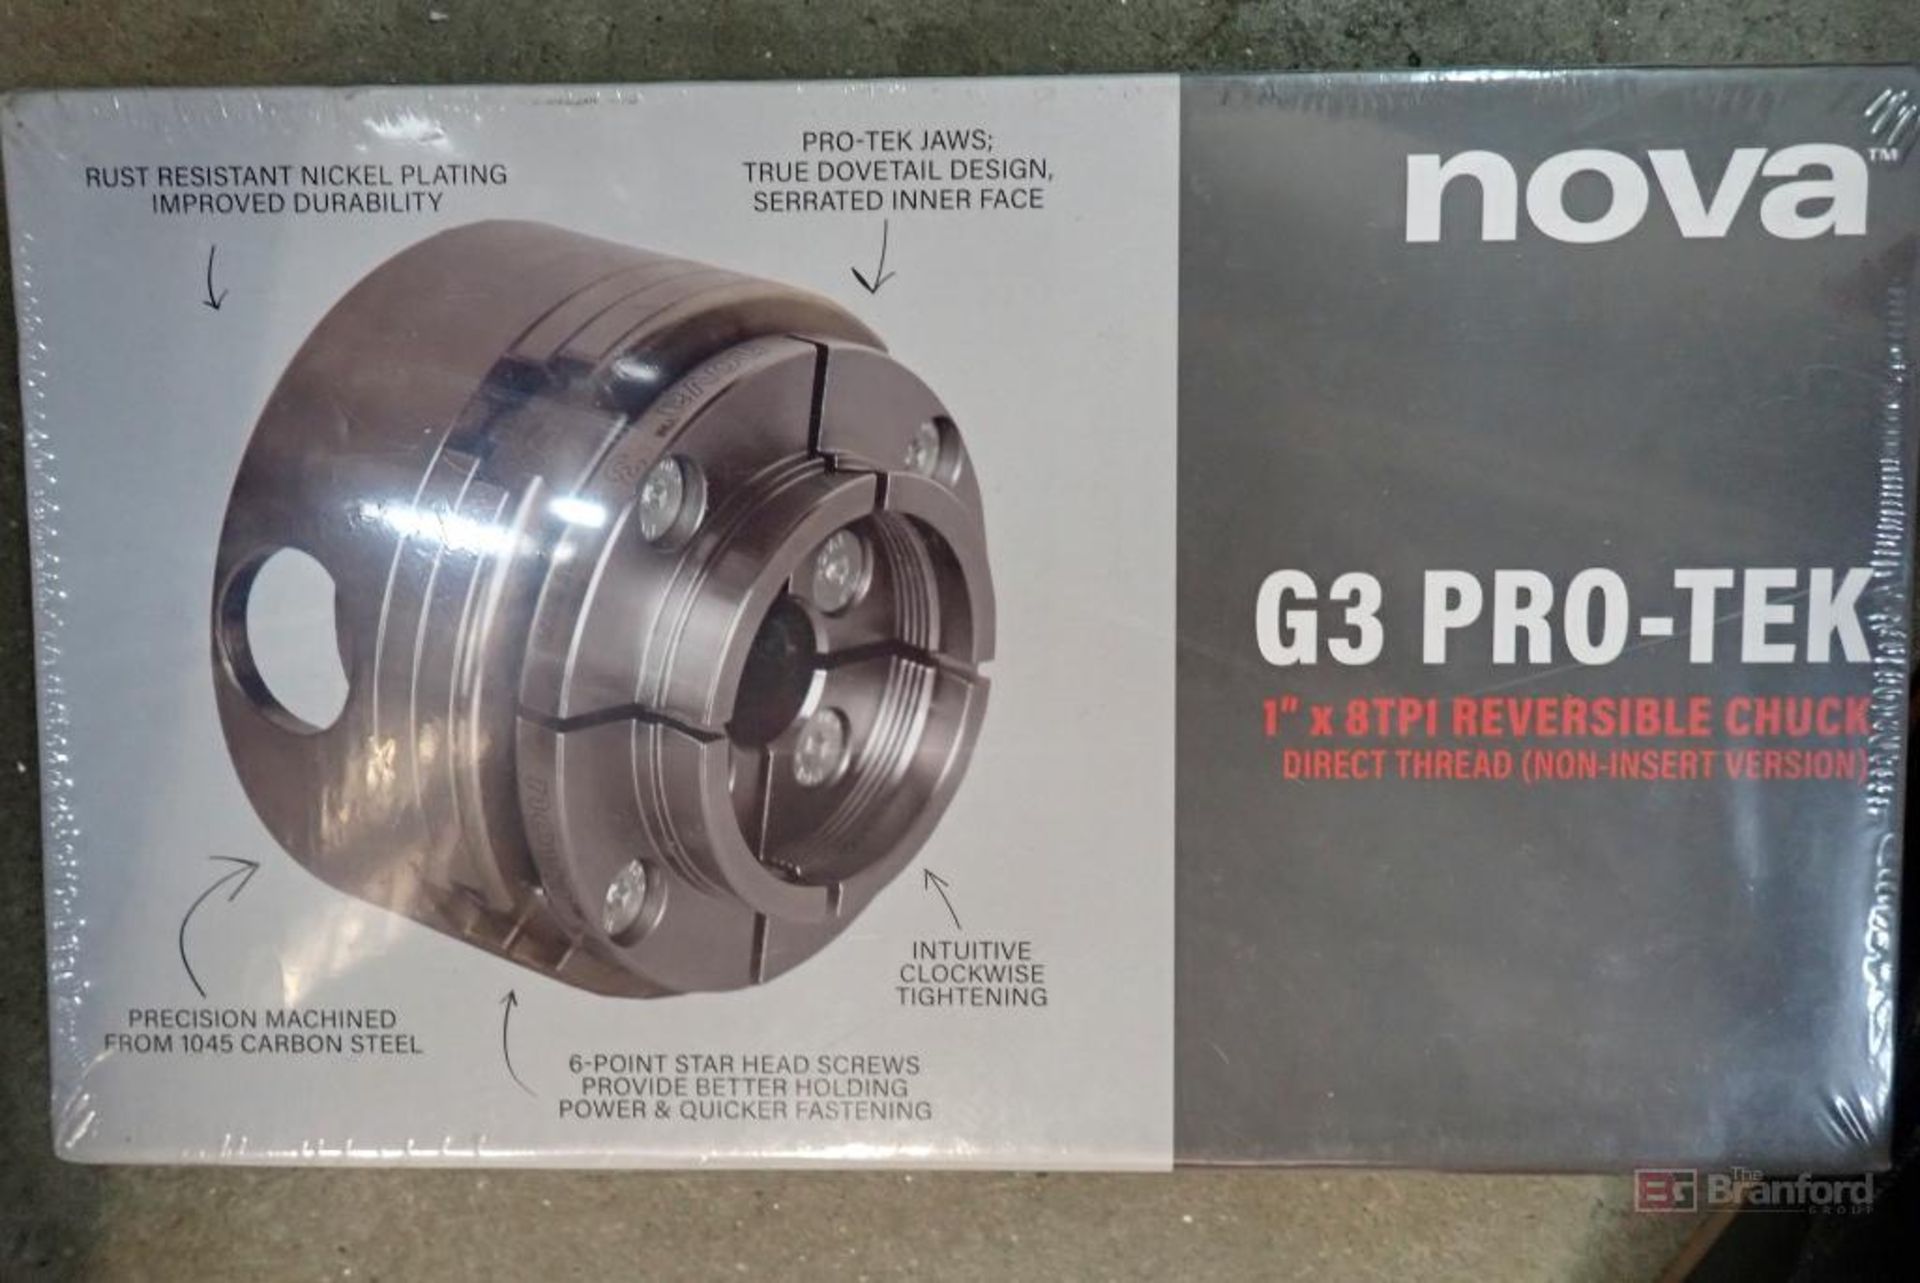 NOVA 48291 G3 Pro-Tek 1" x 8TPI Reversible Chuck - Image 4 of 4